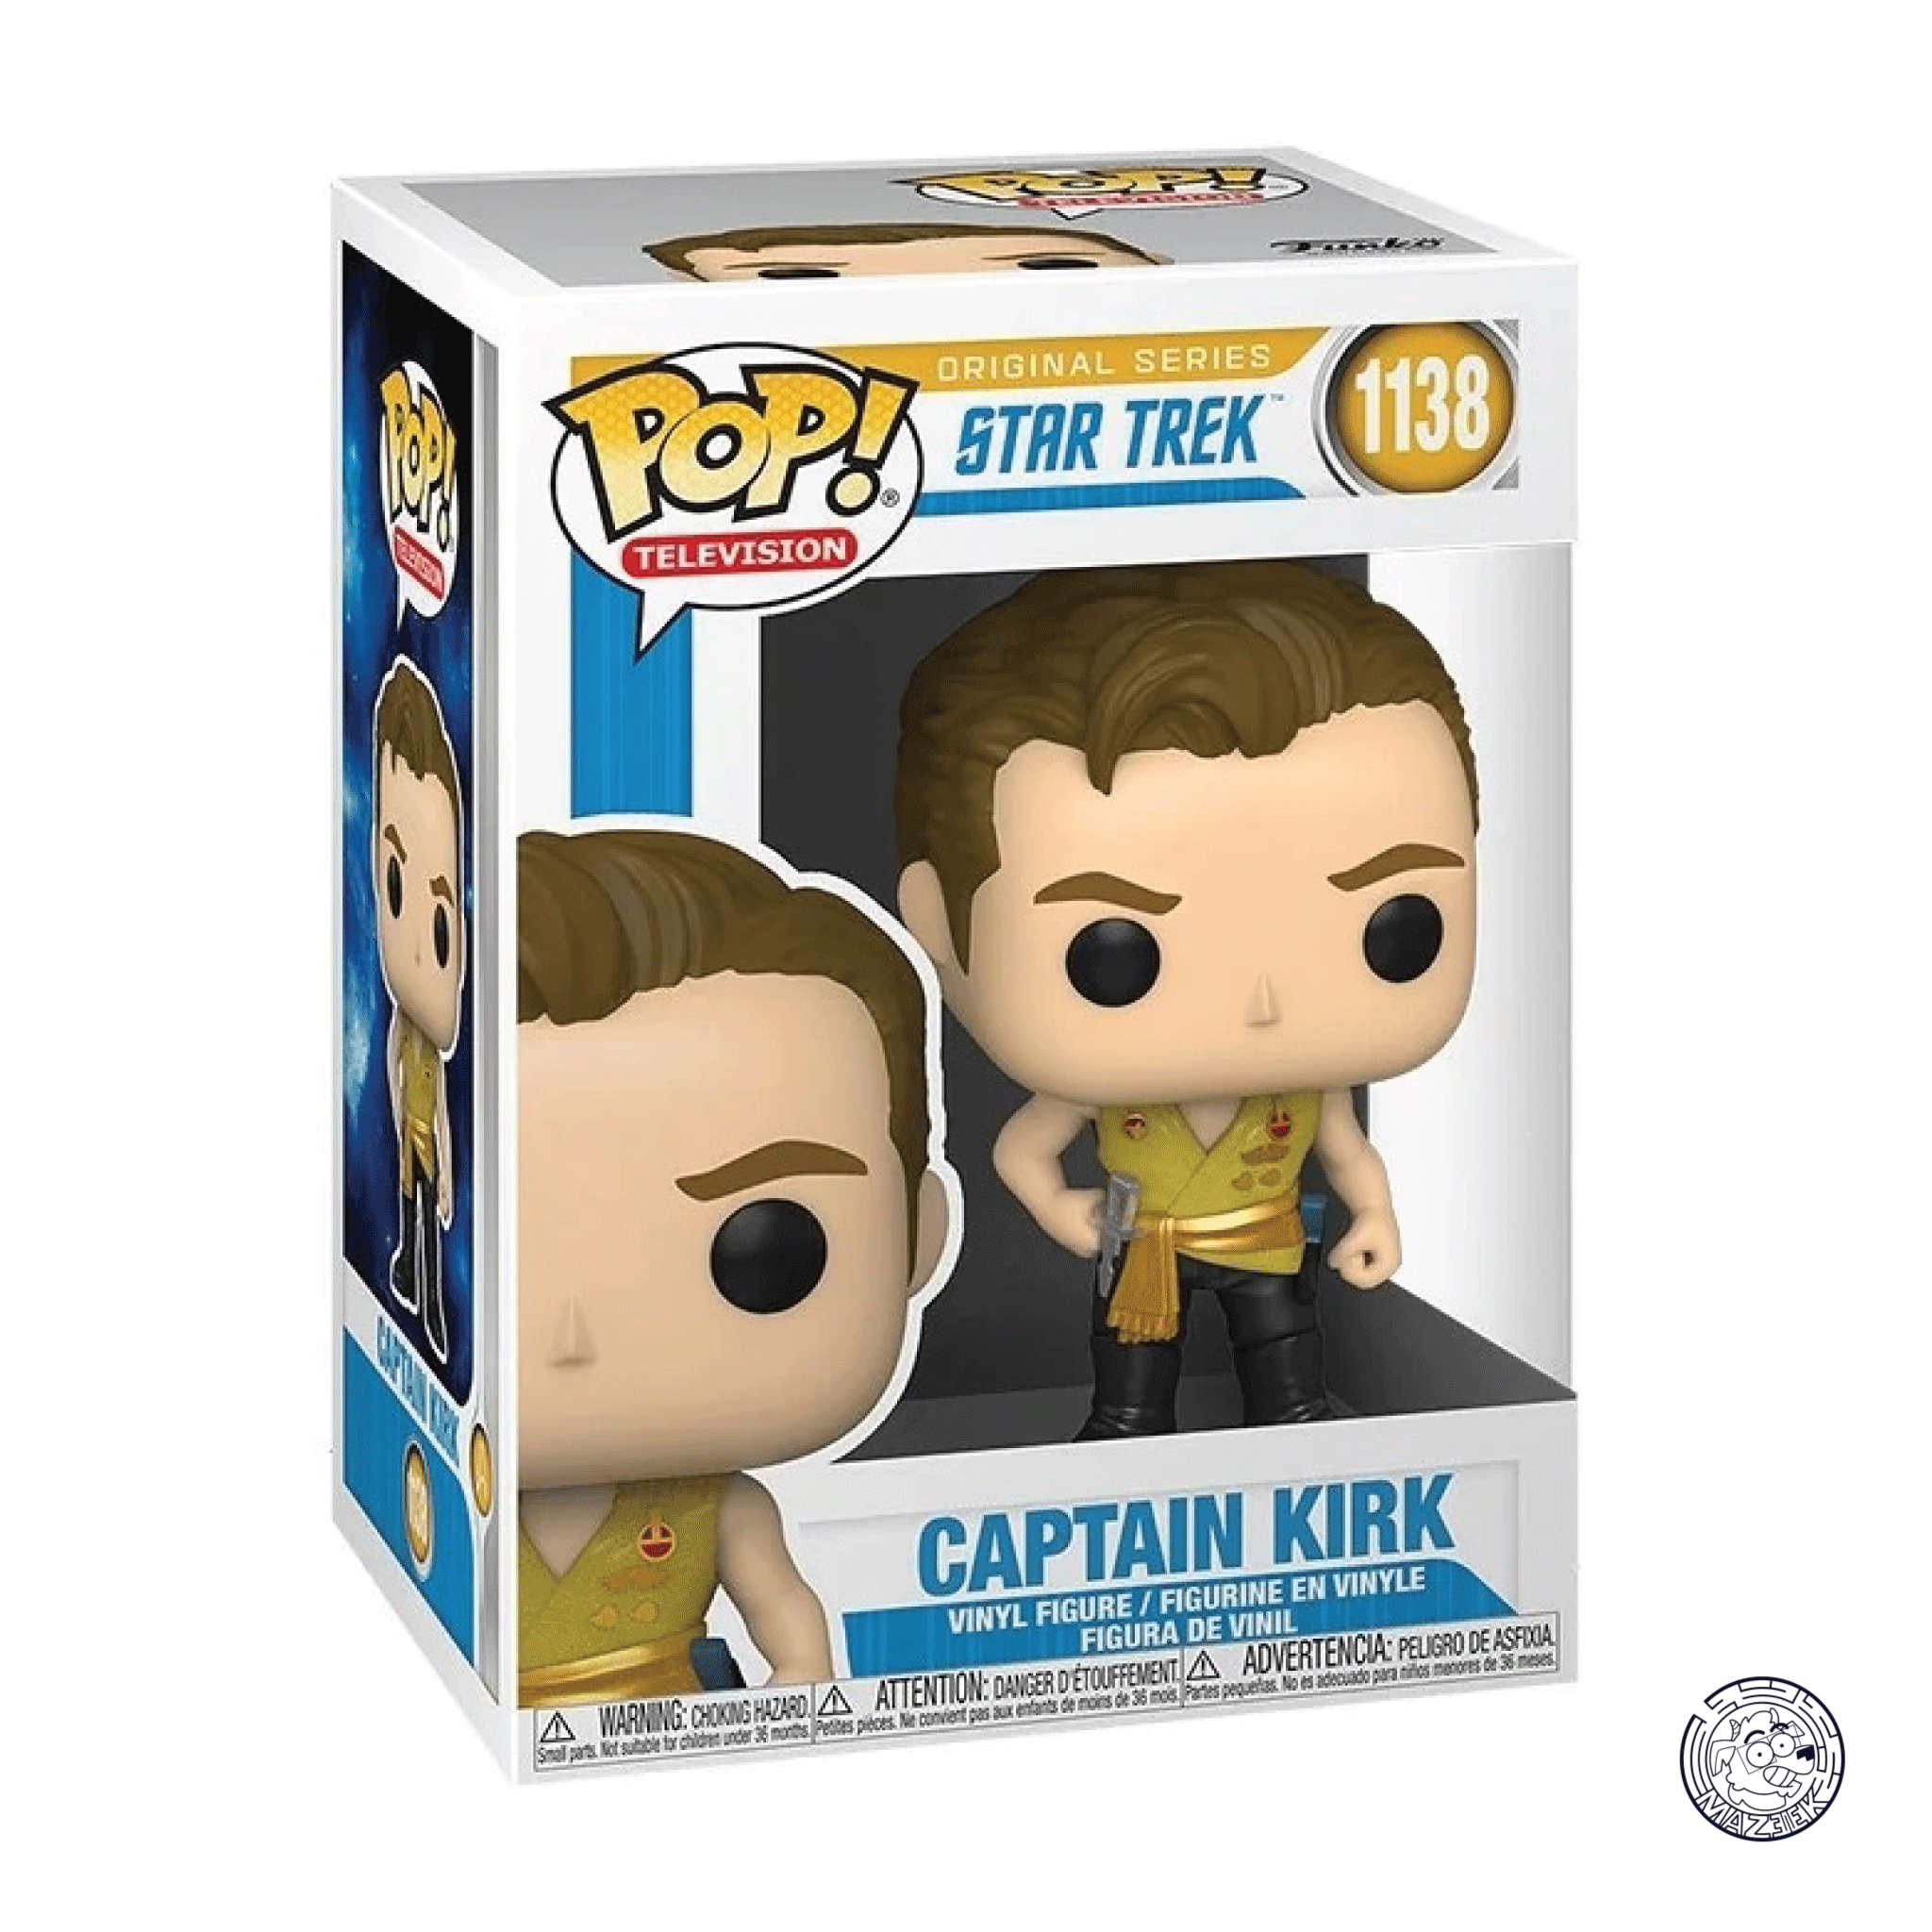 Funko POP! Star Trek: Captain Kirk 1138